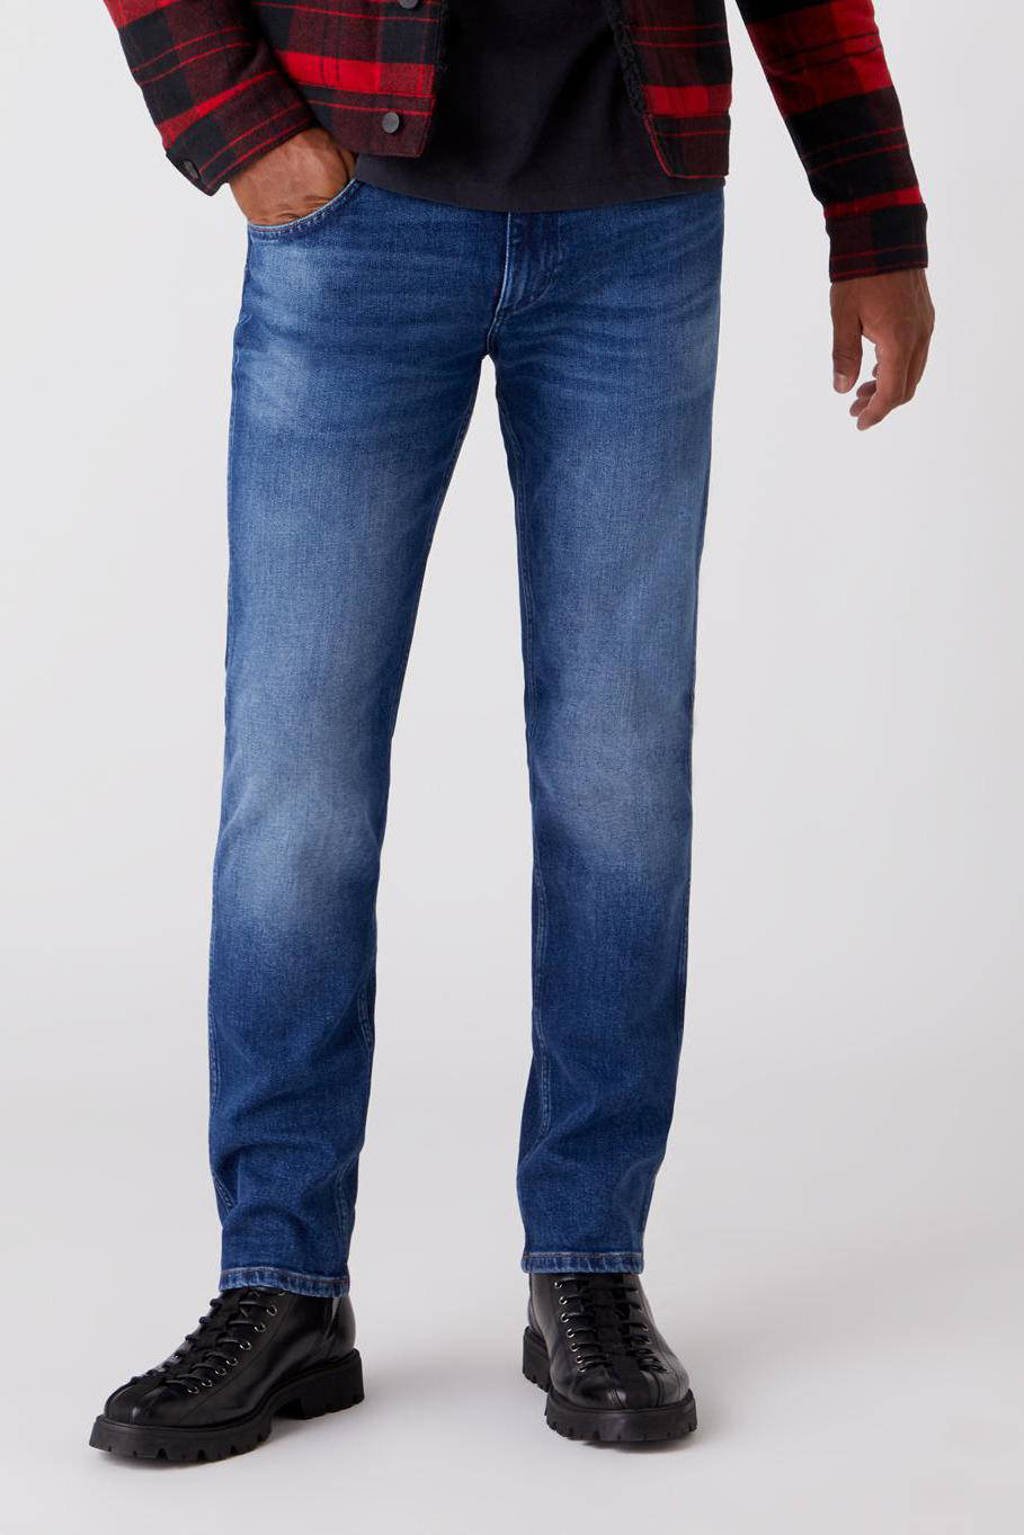 Wrangler regular fit jeans Greenboro hard edge, Hard Edge